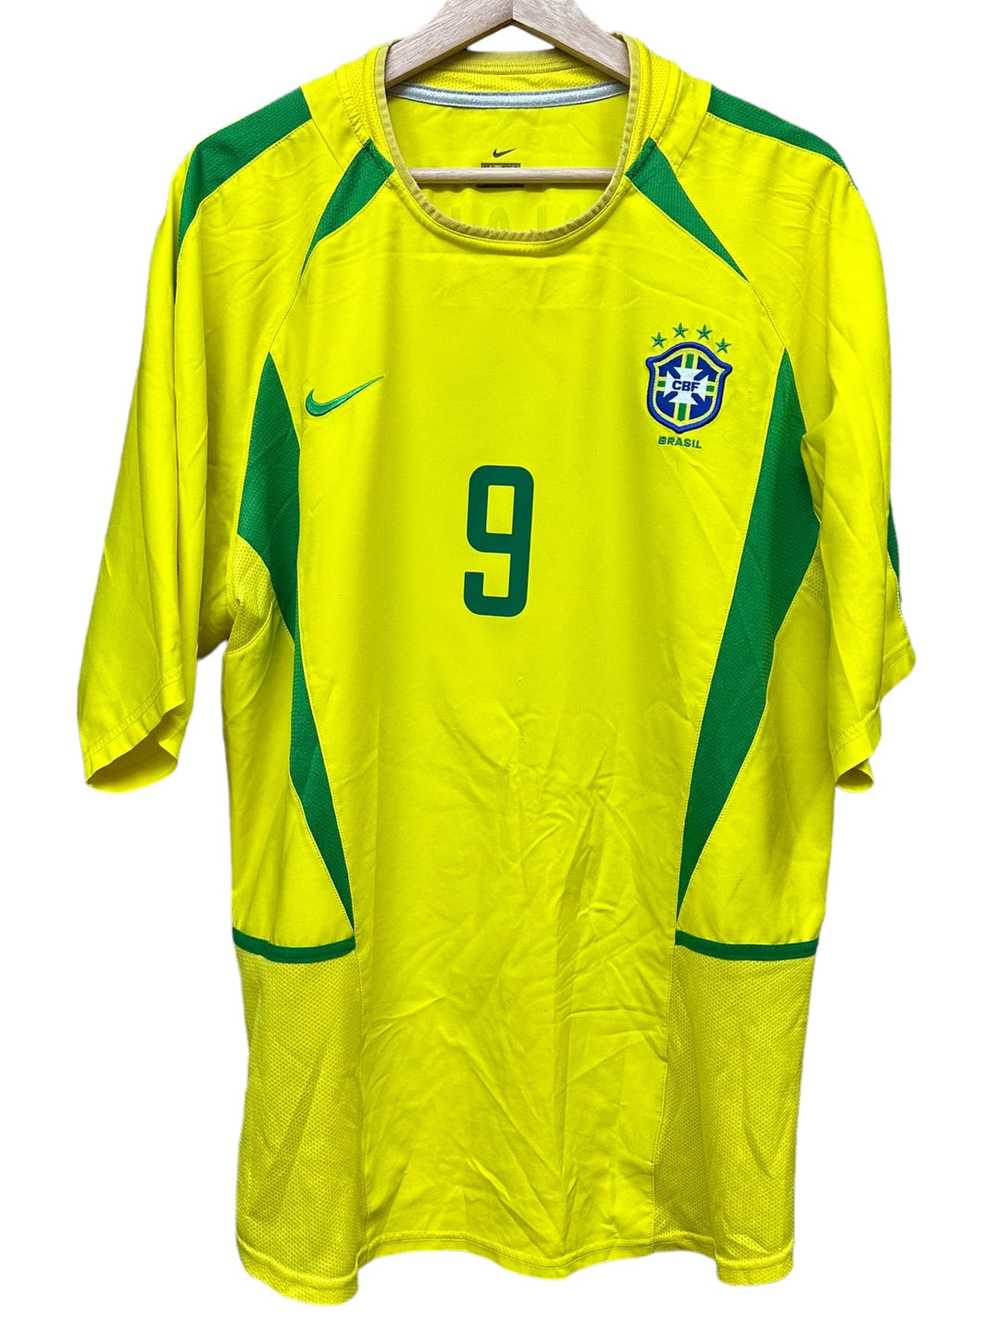 2002 Brazil Ronaldo Jersey size L - image 2